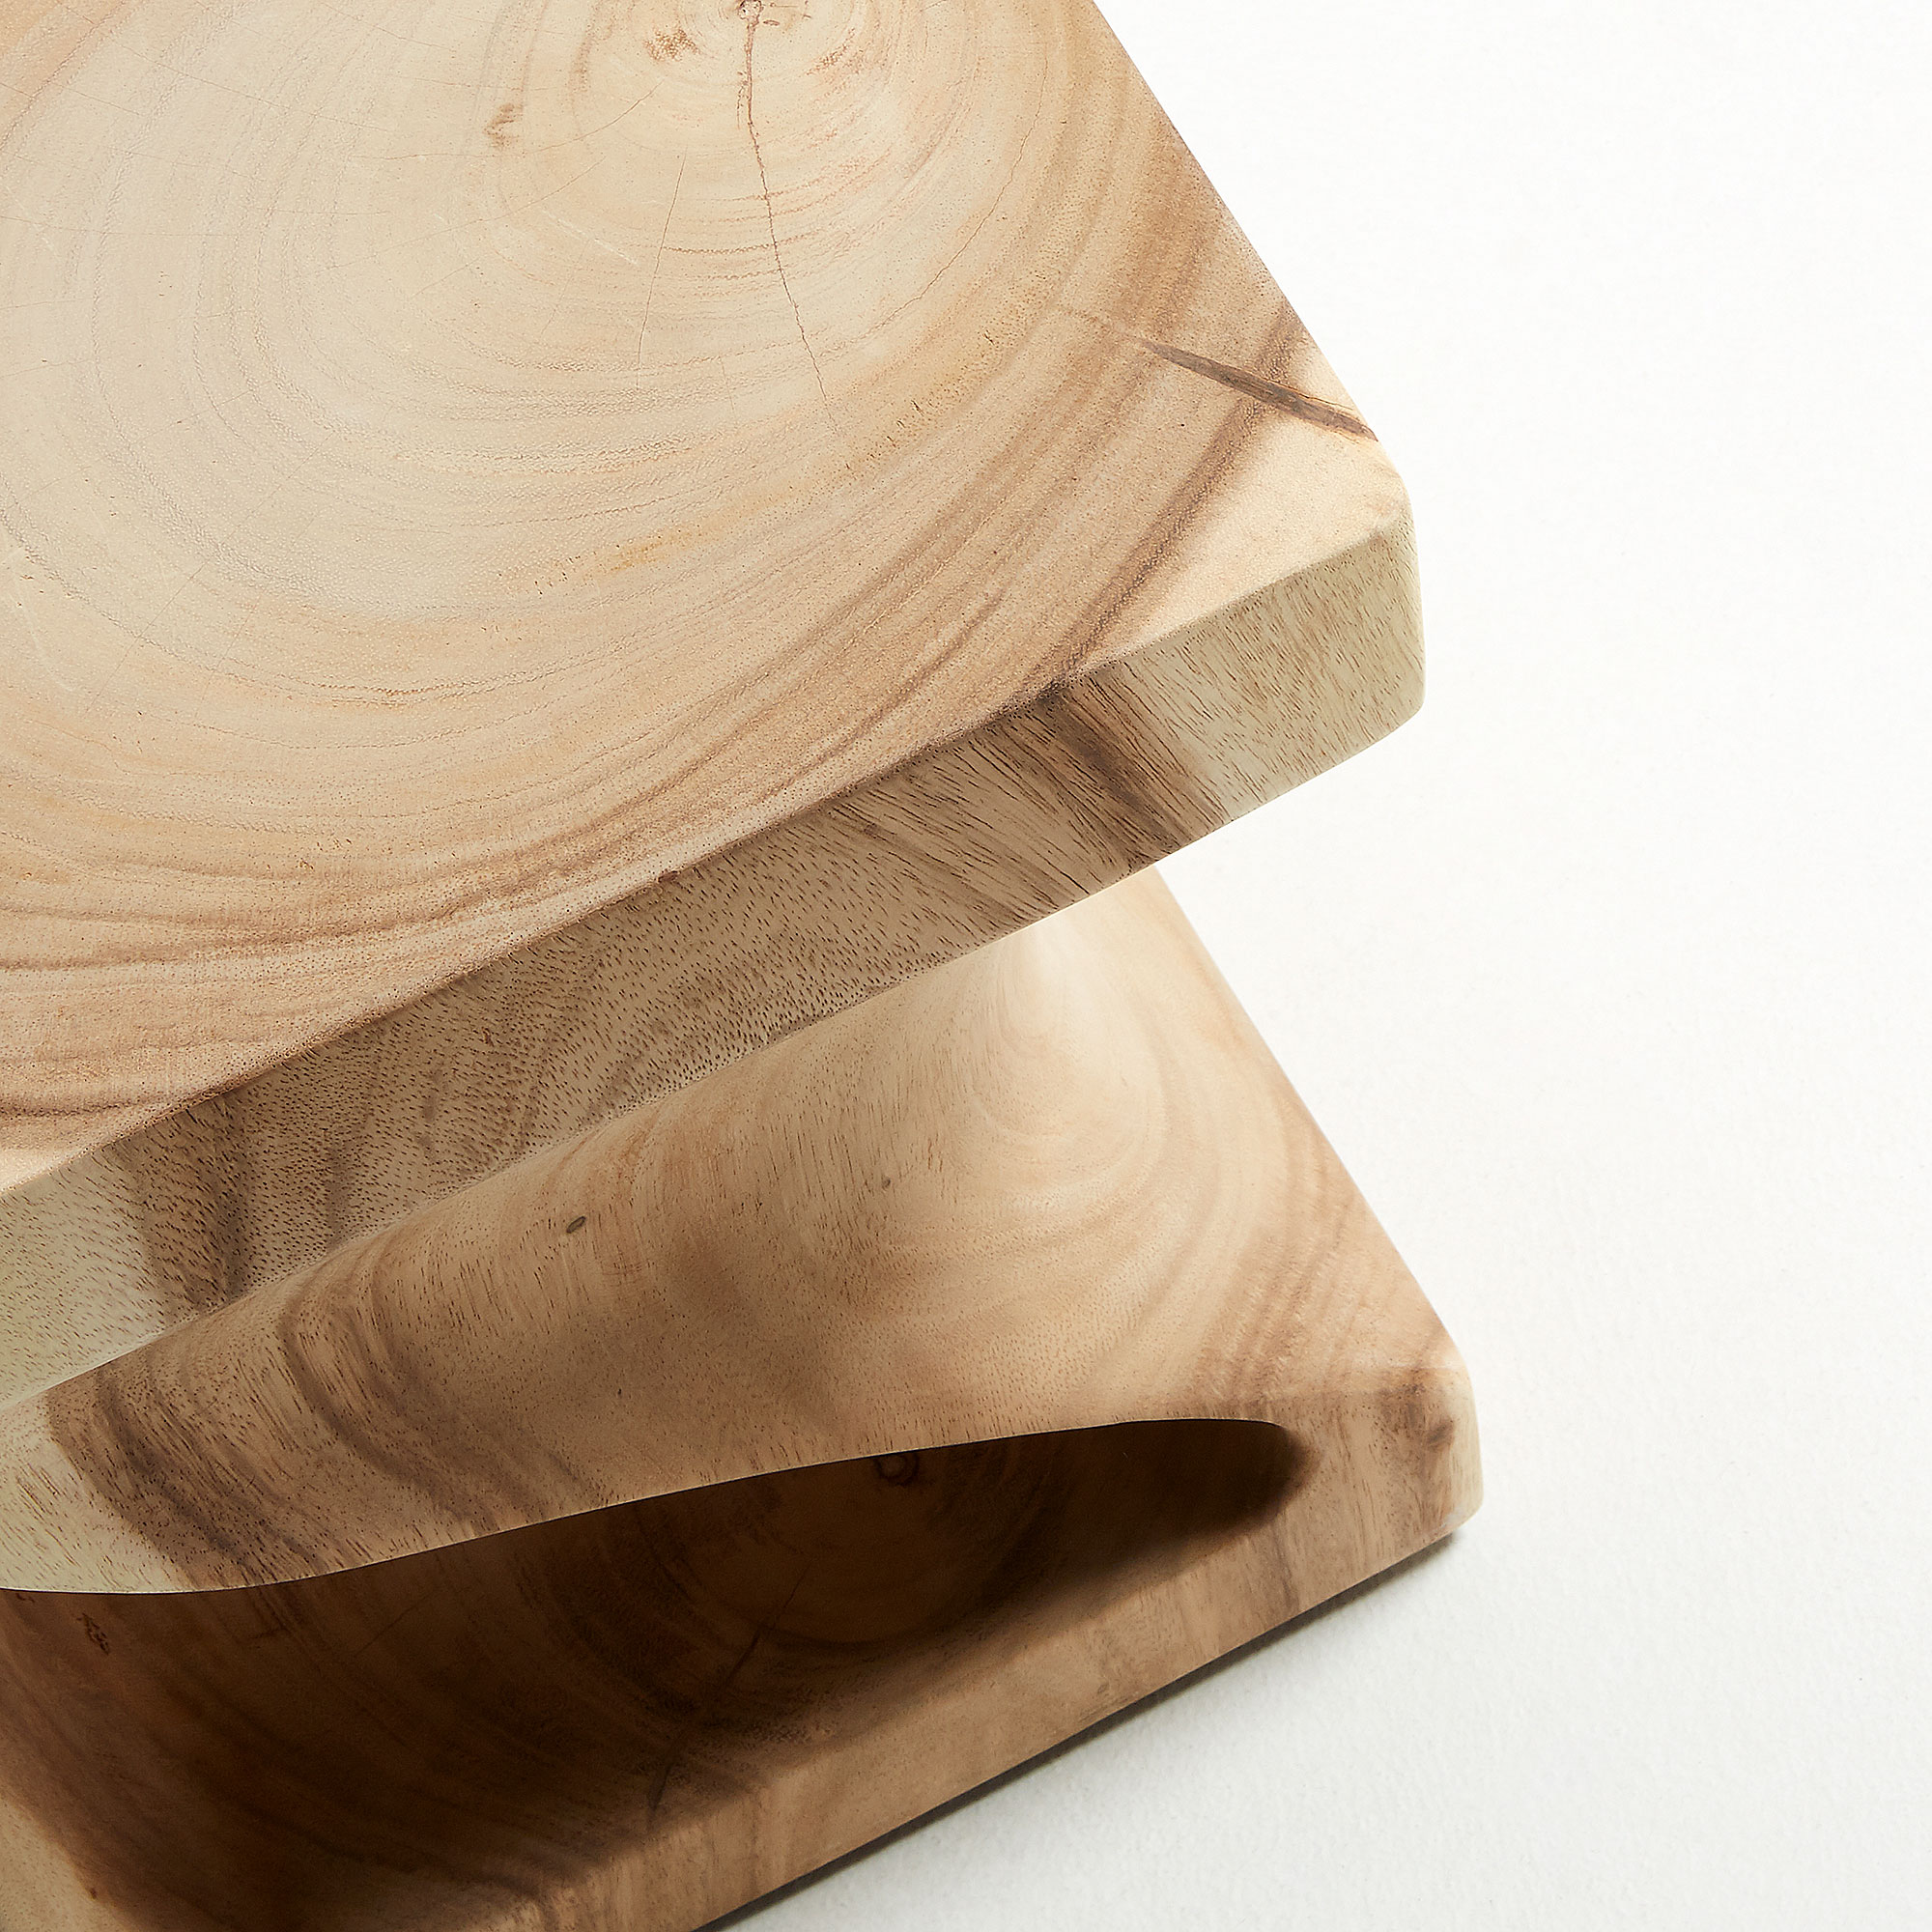 HAKON Side table mungur wood